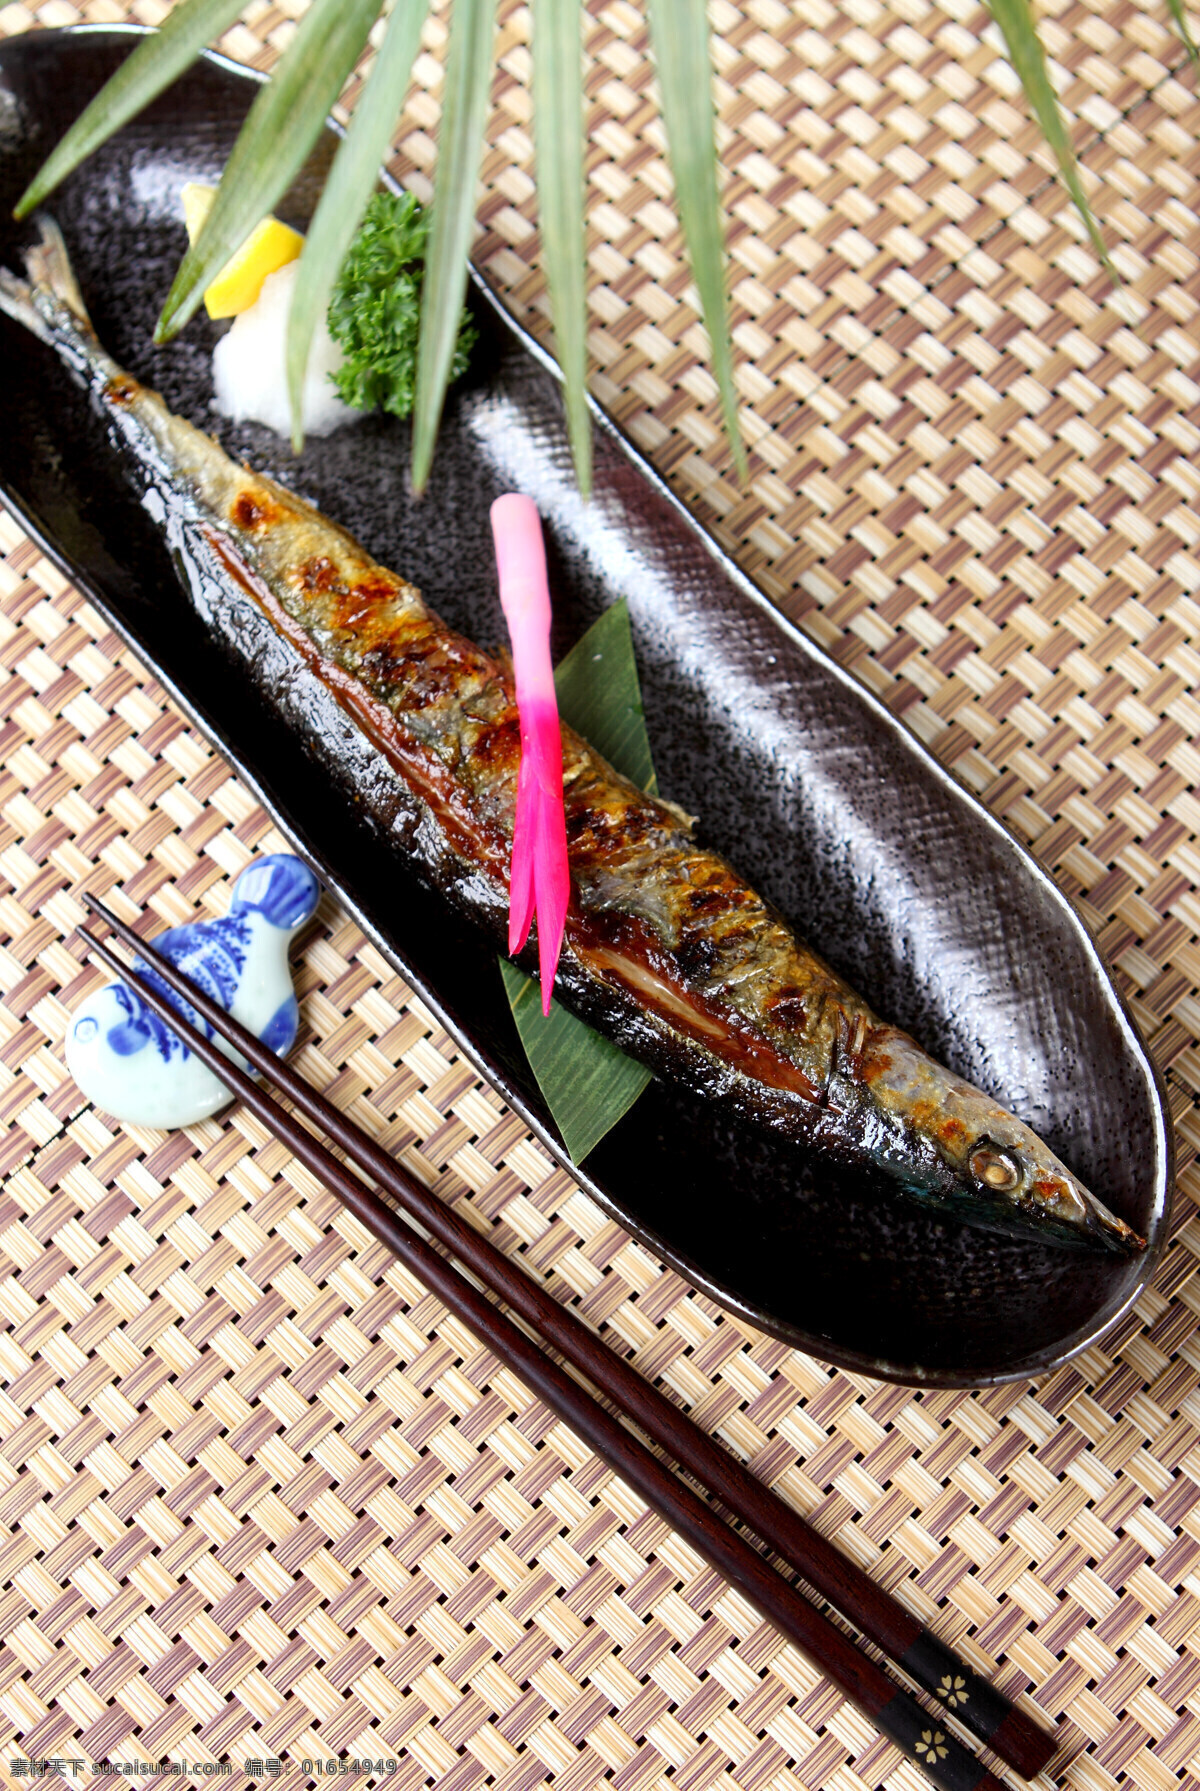 盐烤秋刀鱼 秋刀鱼 烤秋刀鱼 海鲜 鱼类 日本料理 餐饮美食 西餐美食